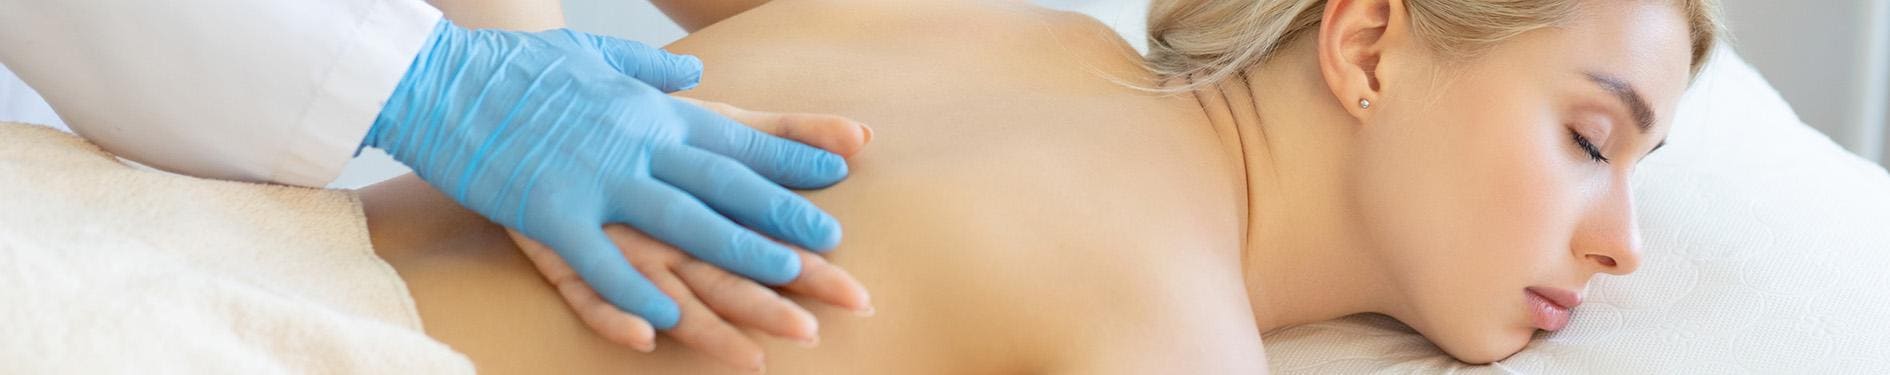 masaż ciała kobiety